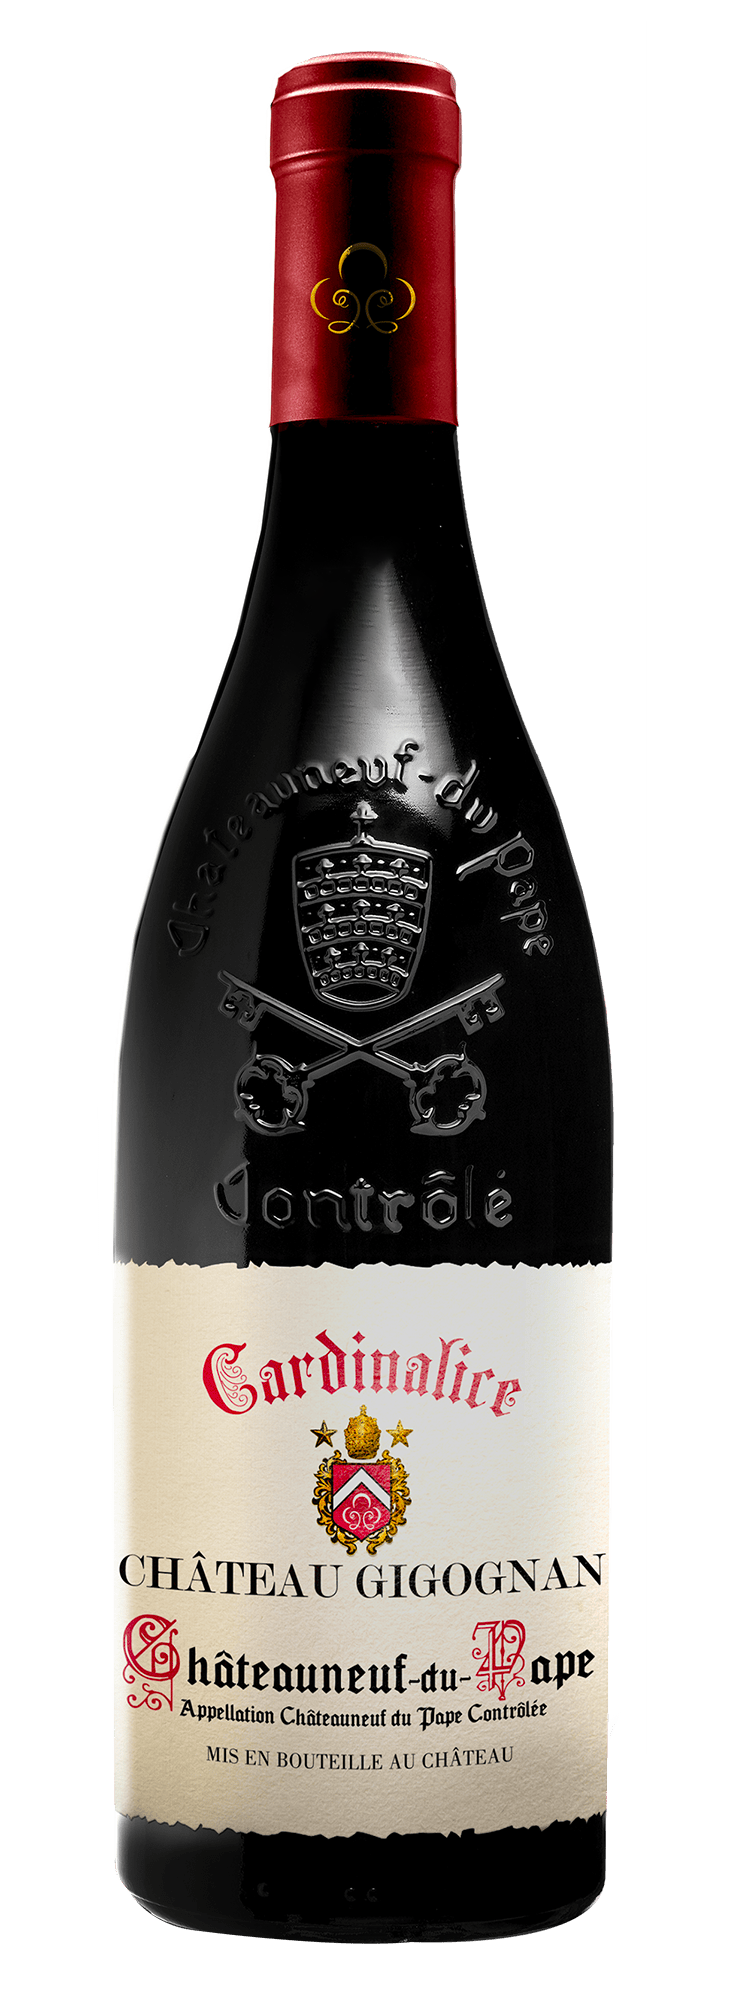 bouteille de vin Chateau Gigognan Chateauneuf-du-Pape Cardinalice Rouge